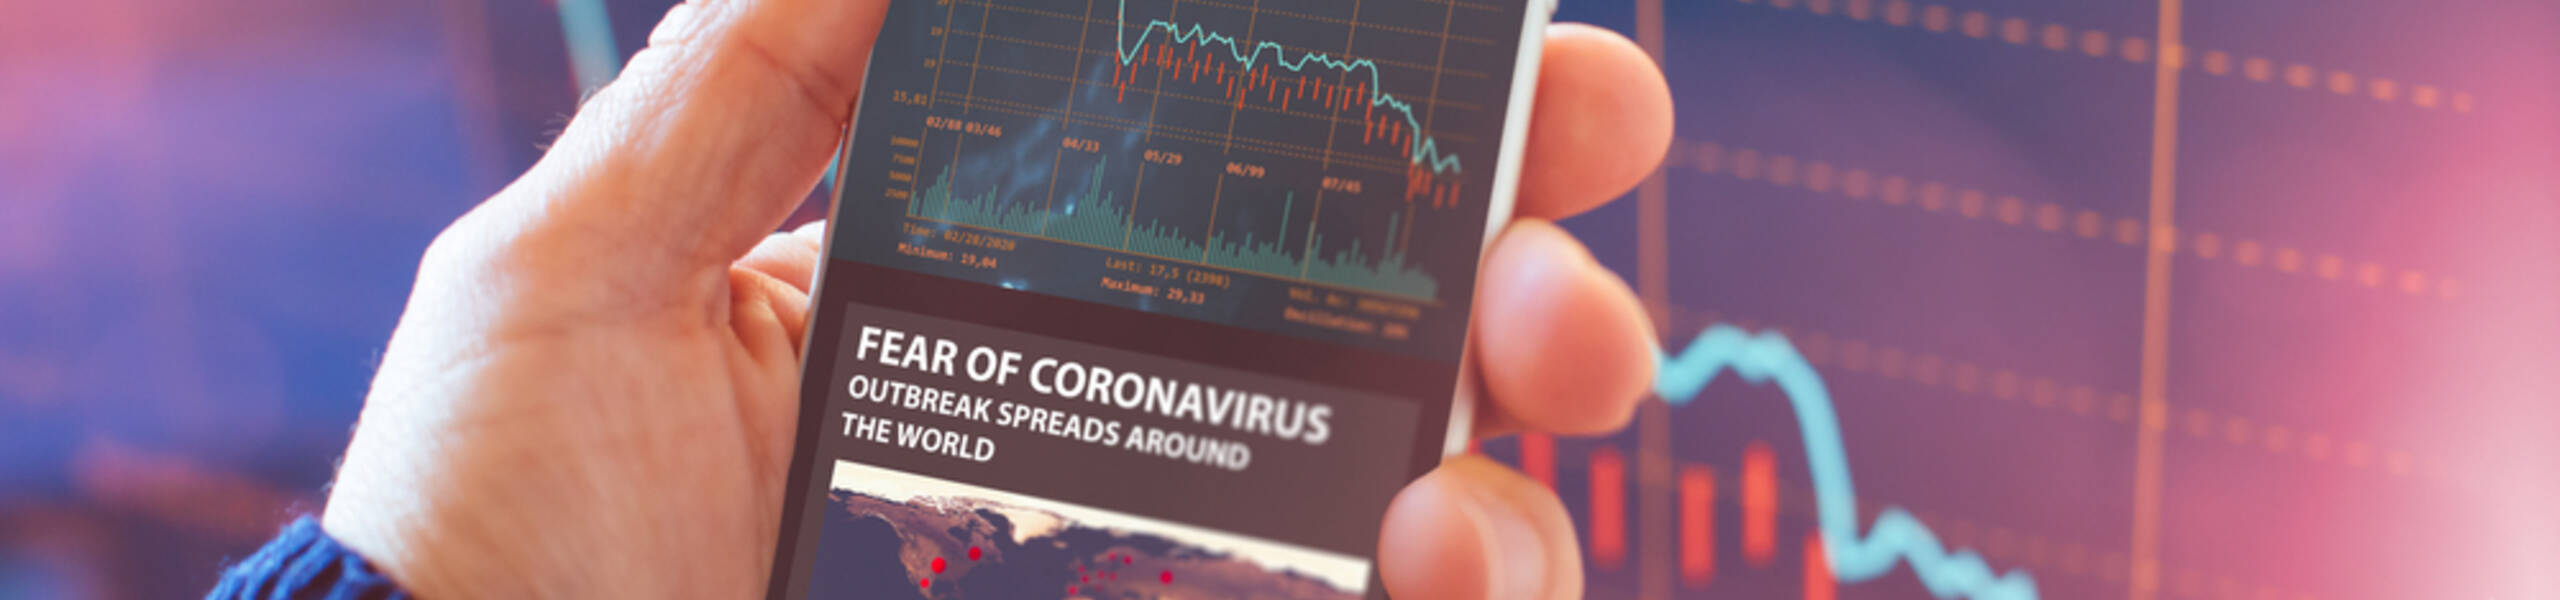 کوروناوائرس وبائی مرض پر ٹریڈںگ کے لئے تین منظرنامے